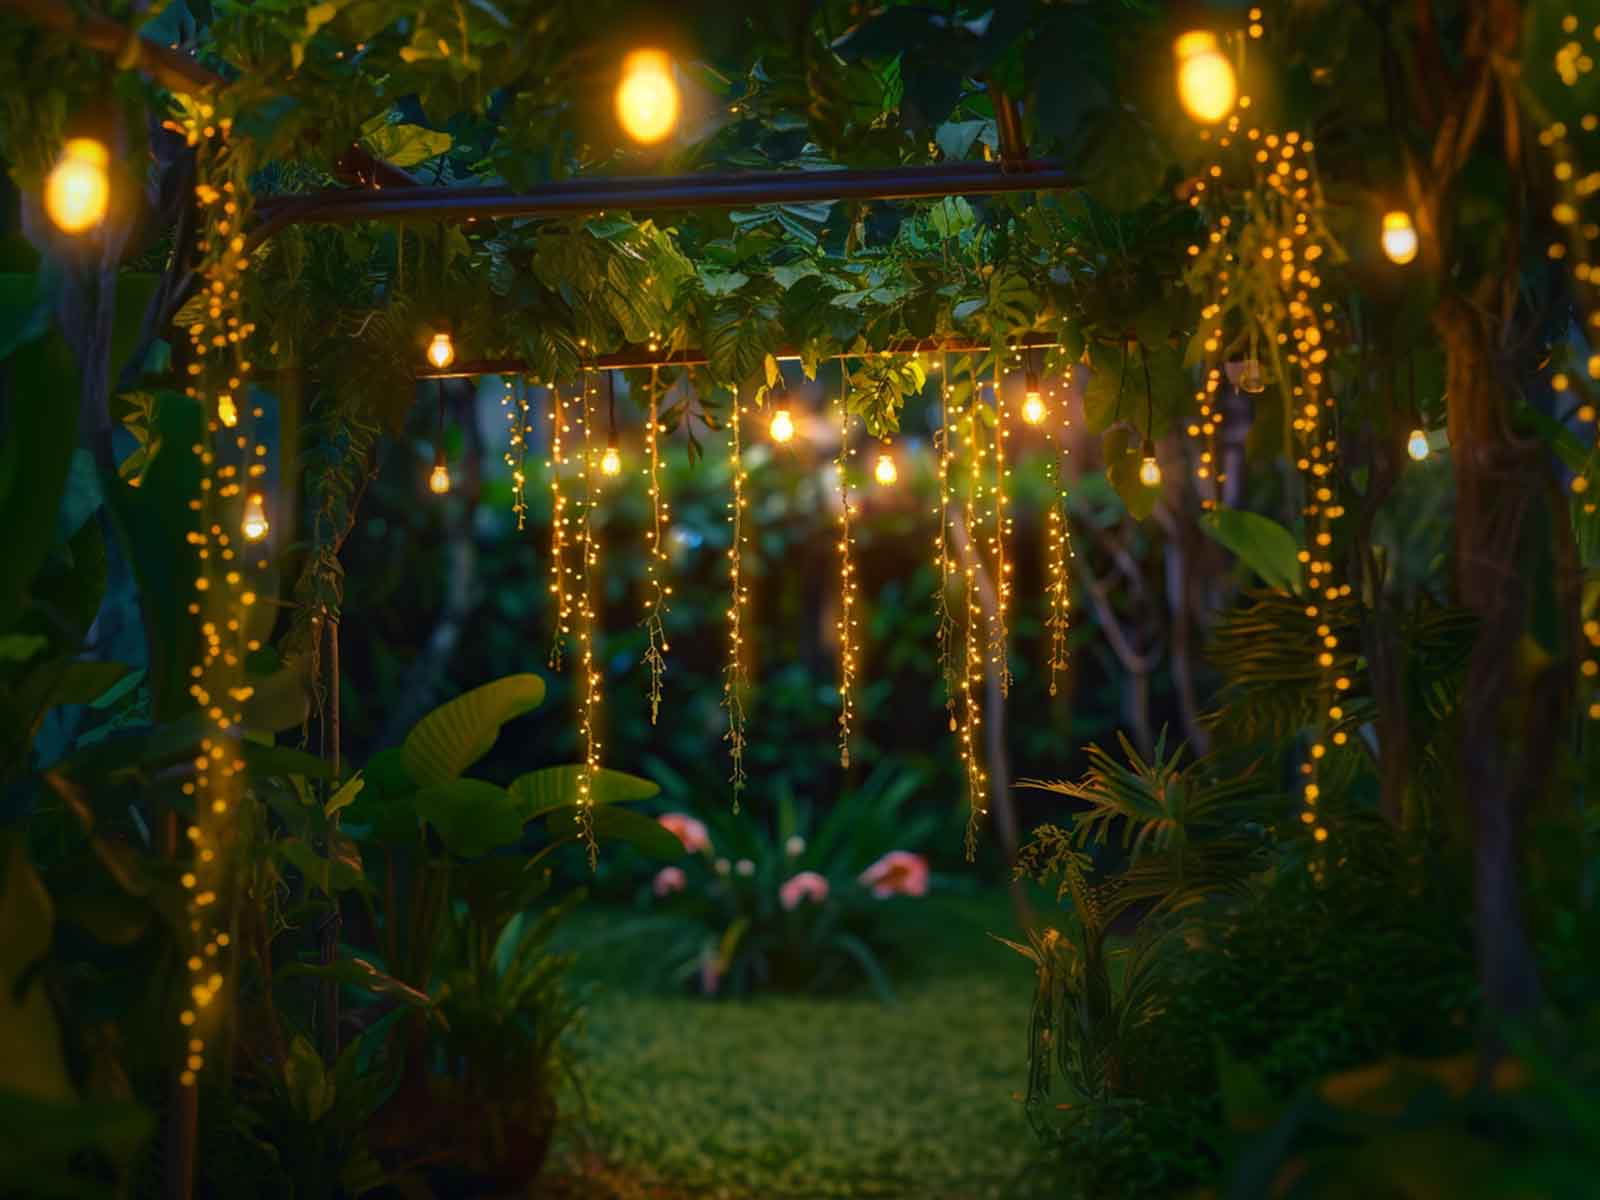 Illuminated artificial vine decorating a garden entrance